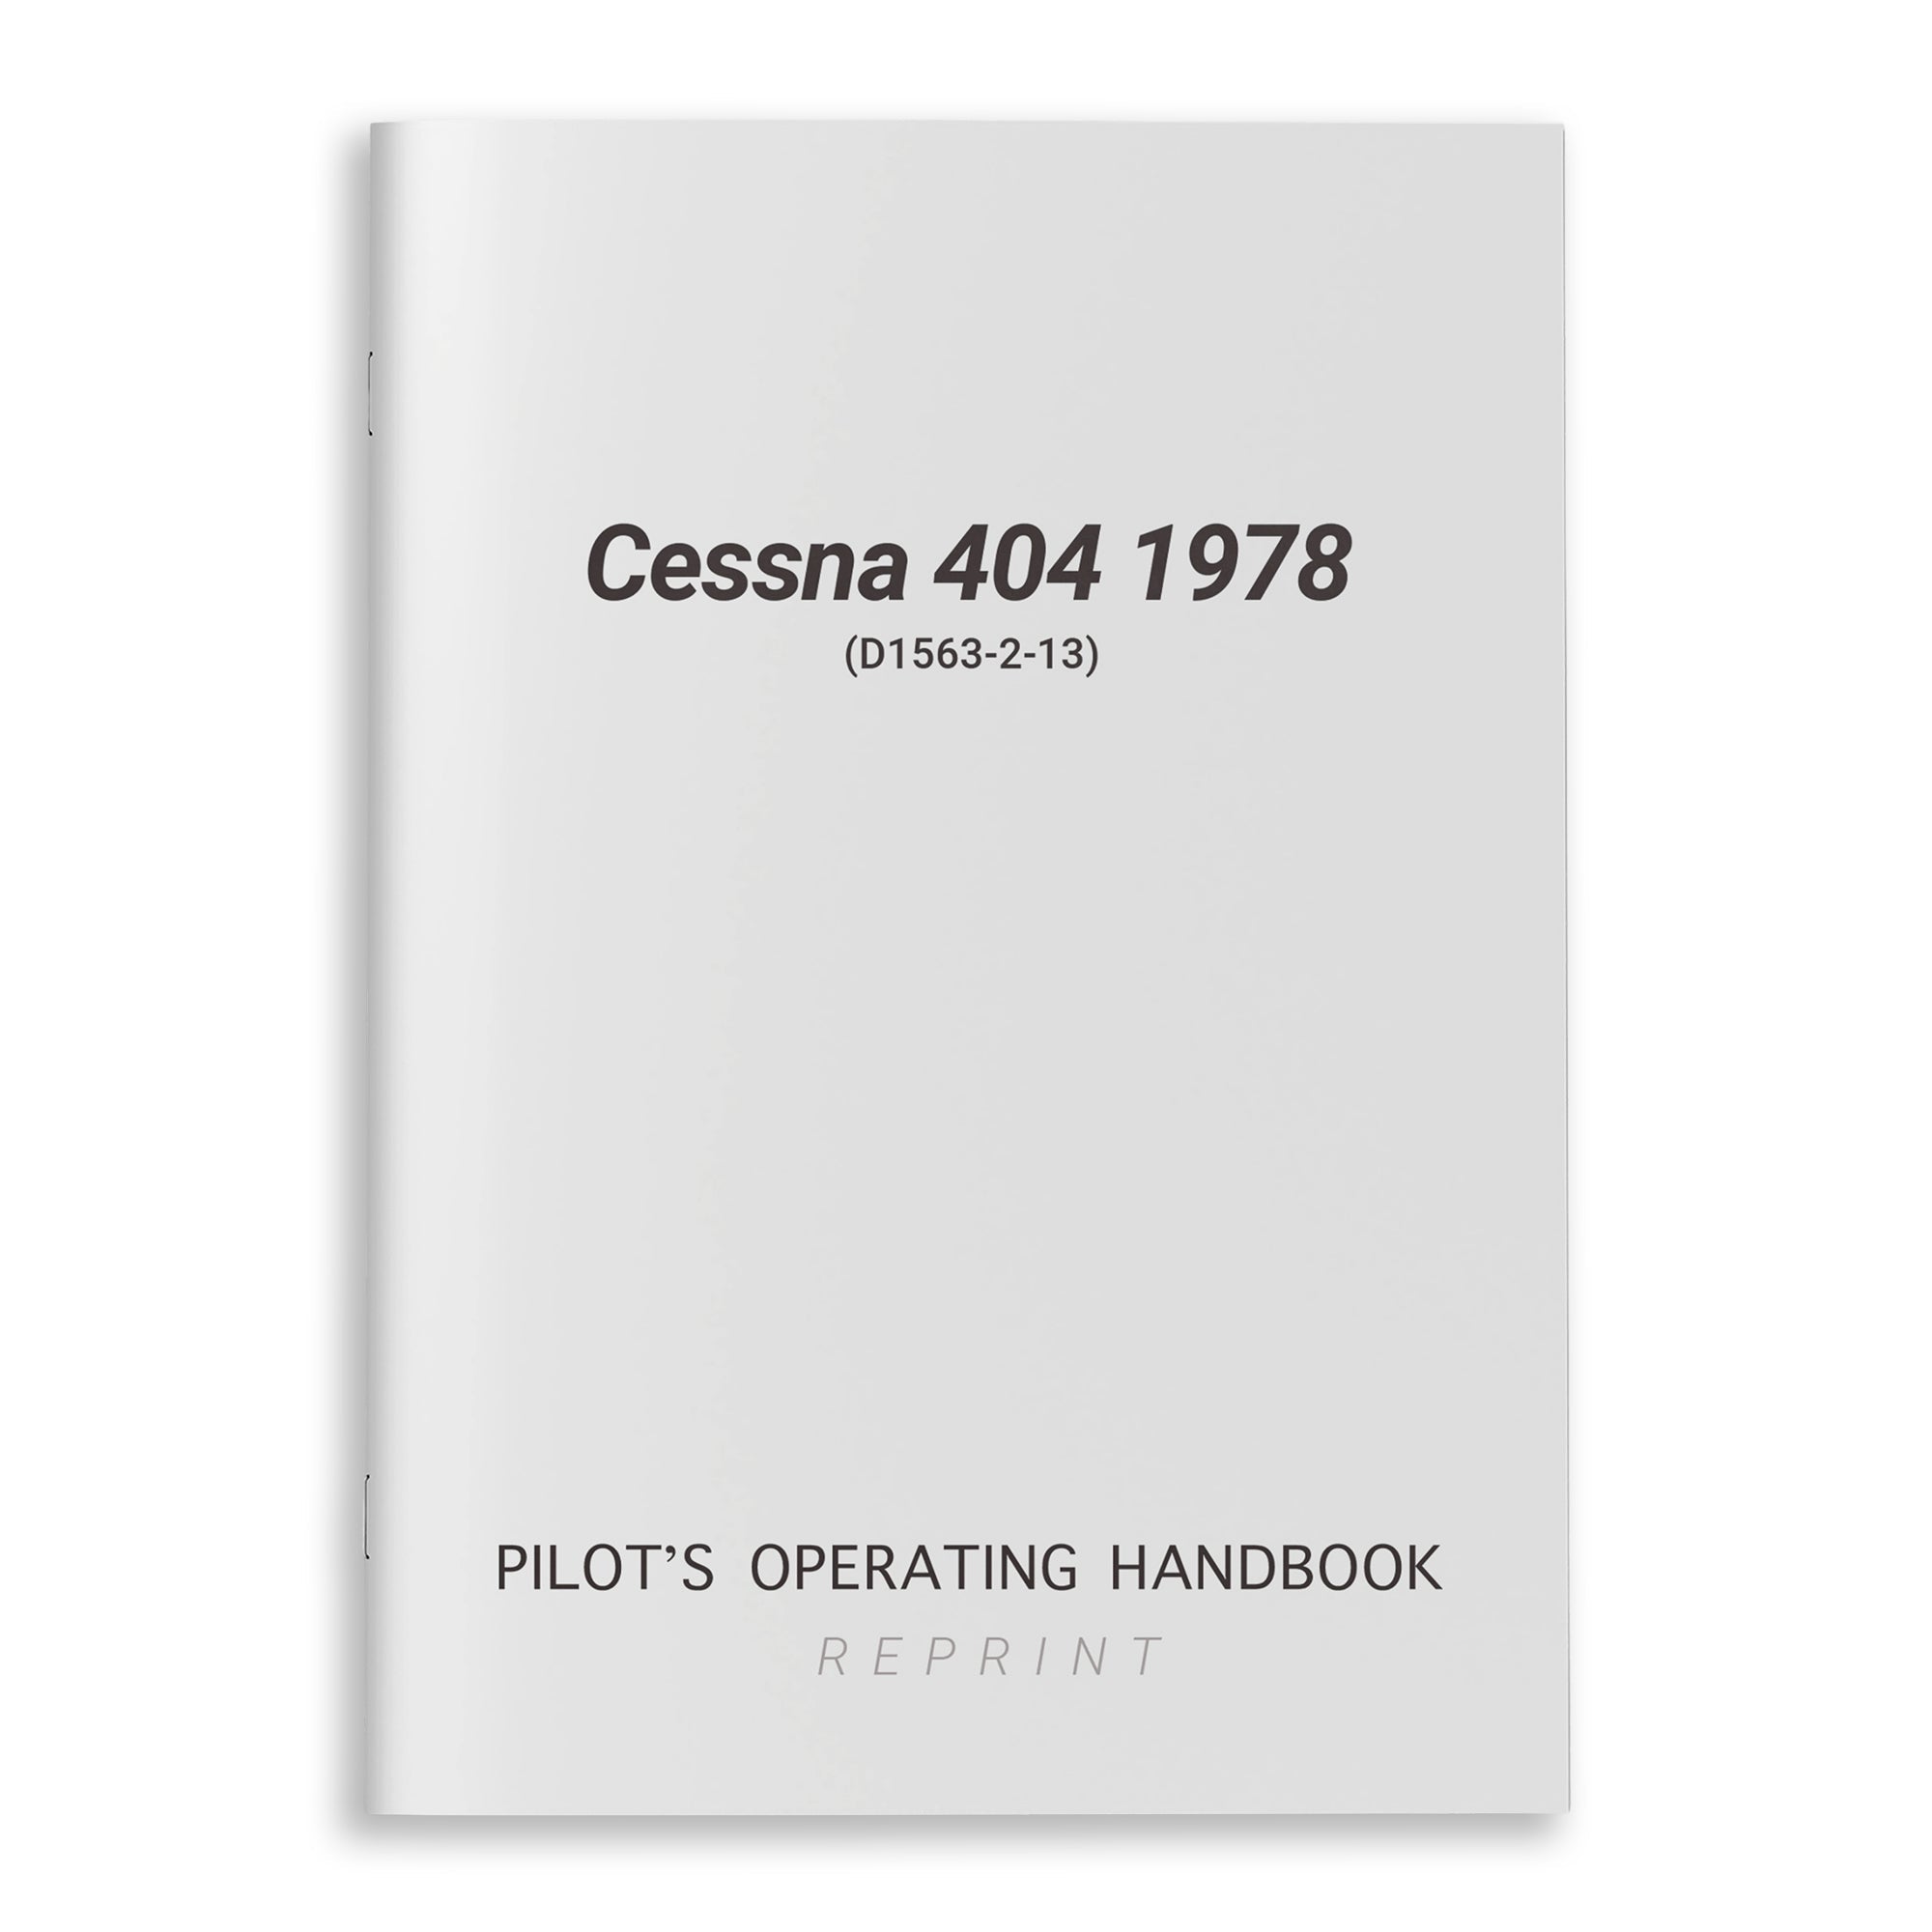 Cessna 404 1978 Pilot's Operating Handbook (D1563-2-13) - PilotMall.com